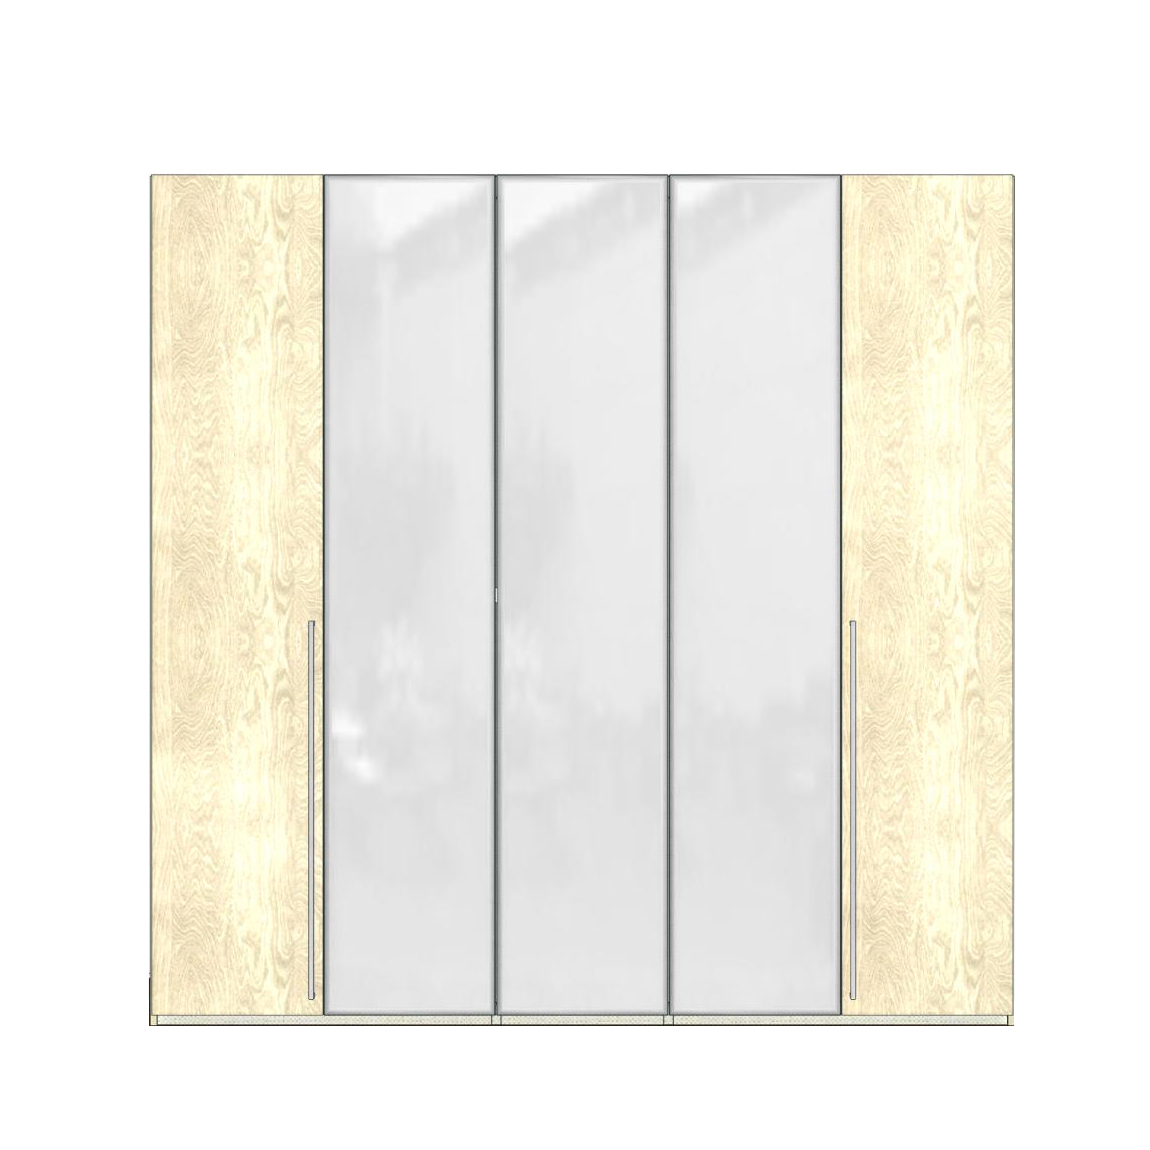 Шкаф платяной Ambra, 5-ти дверный, с зеркалами, цвет: янтарная береза, 232x61x228 см (148AR5.04AV)148AR5.04AV